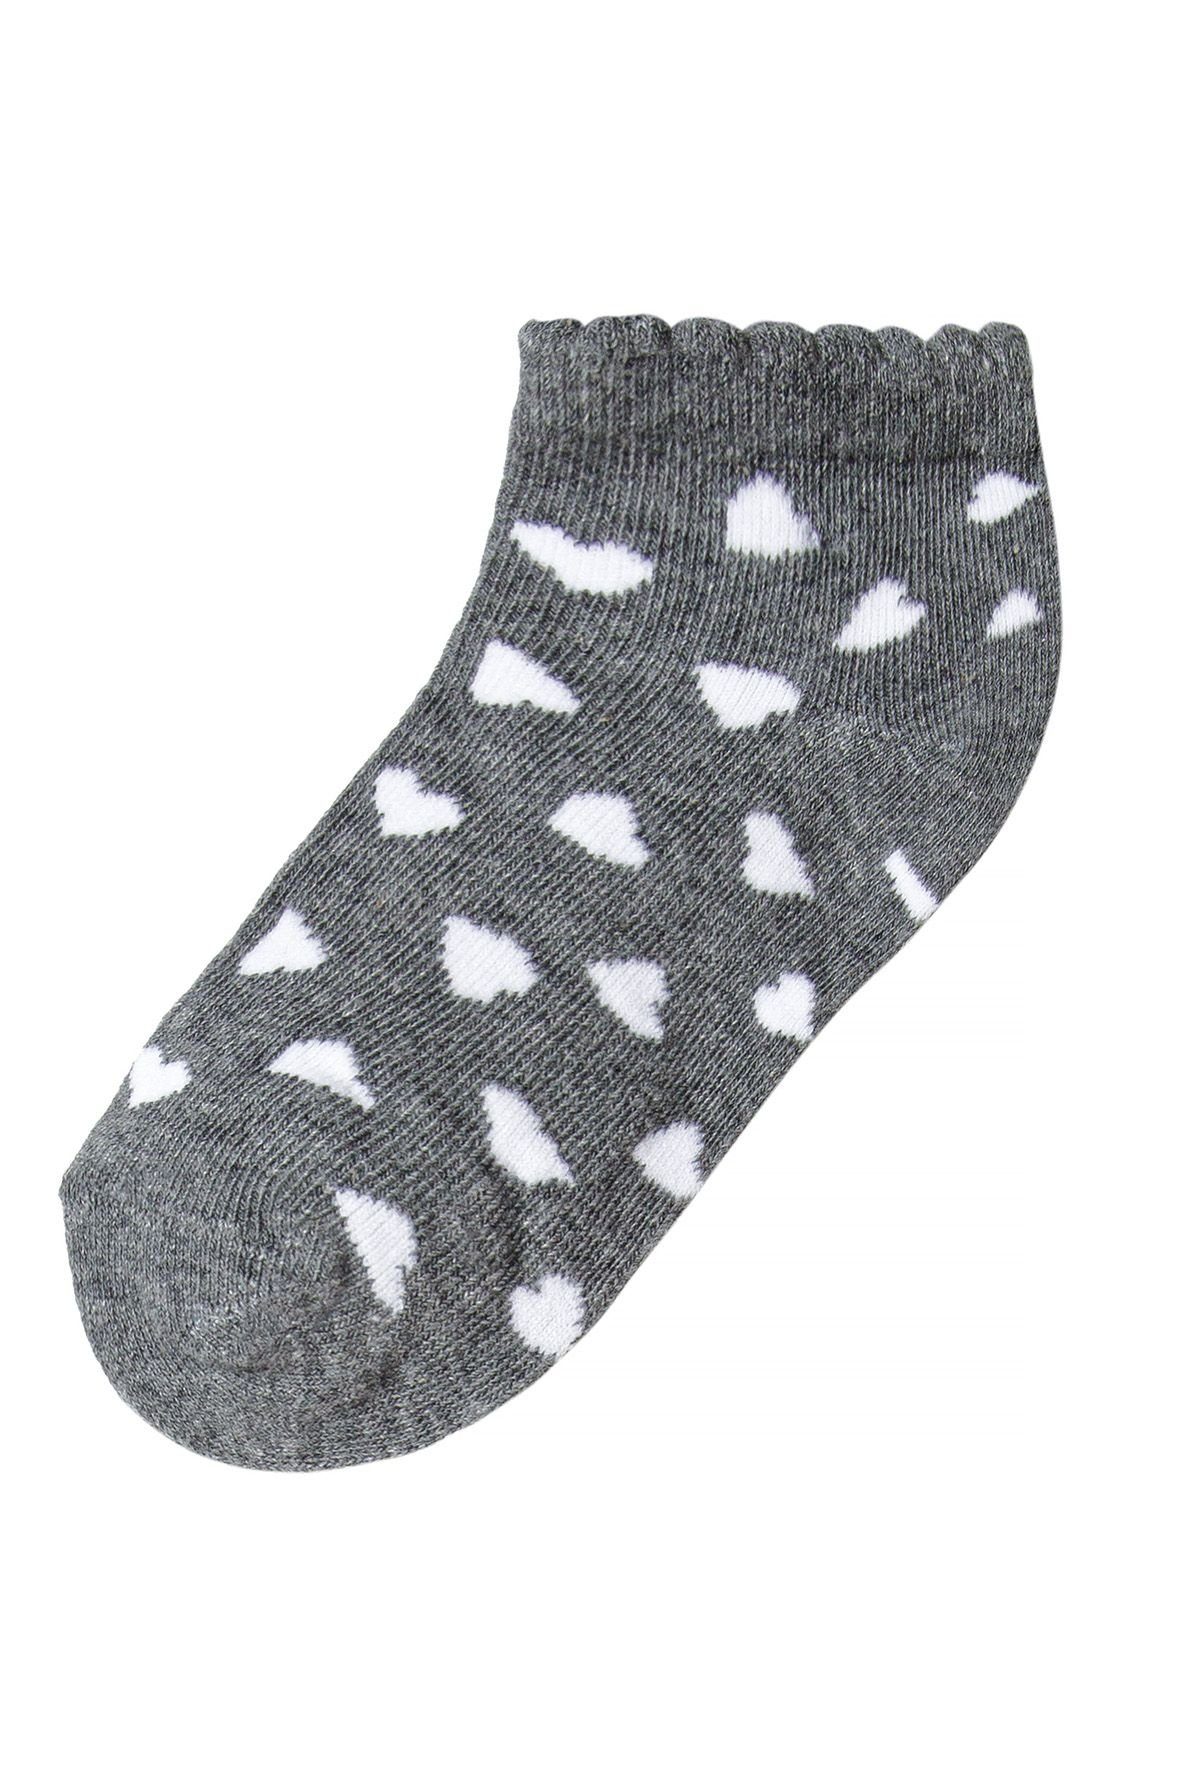 MINOTI Kurzsocken 5-Pack Socken Bunt (3y-14y)